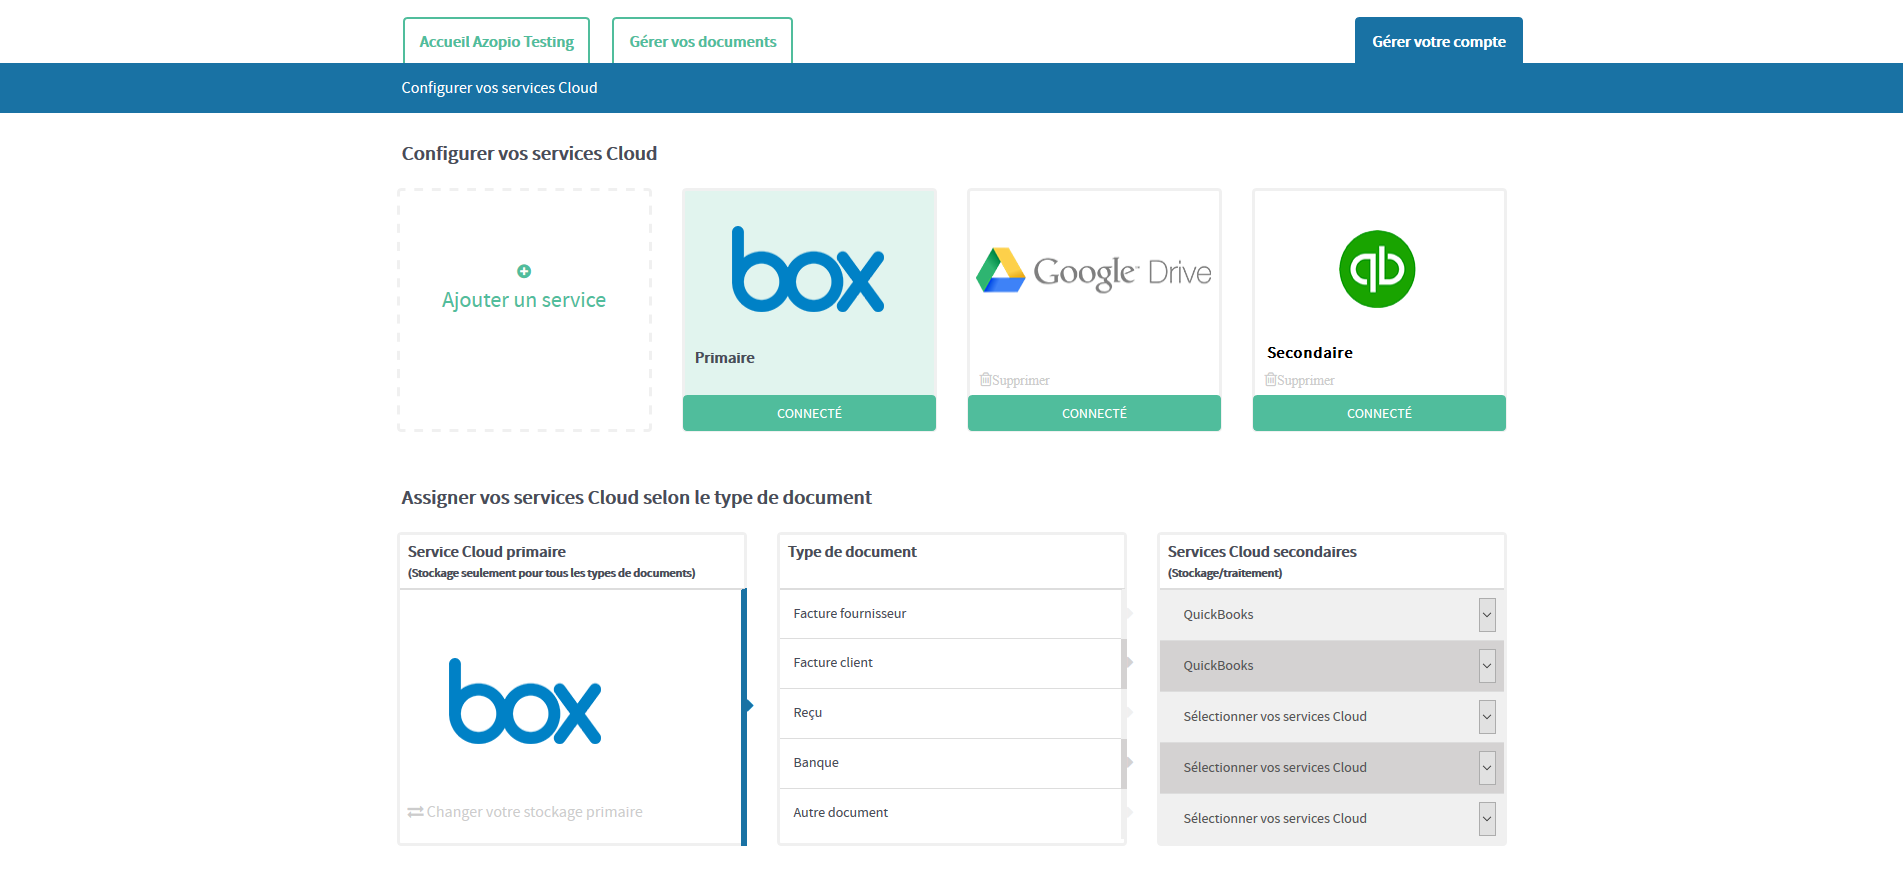 Azopio - L'utilisateur peut configurer ses services de stockage Cloud (tels que Dropbox, Google Drive, Box et OneDrive) et ses logiciels de comptabilité en ligne (Quickbooks et Xero)